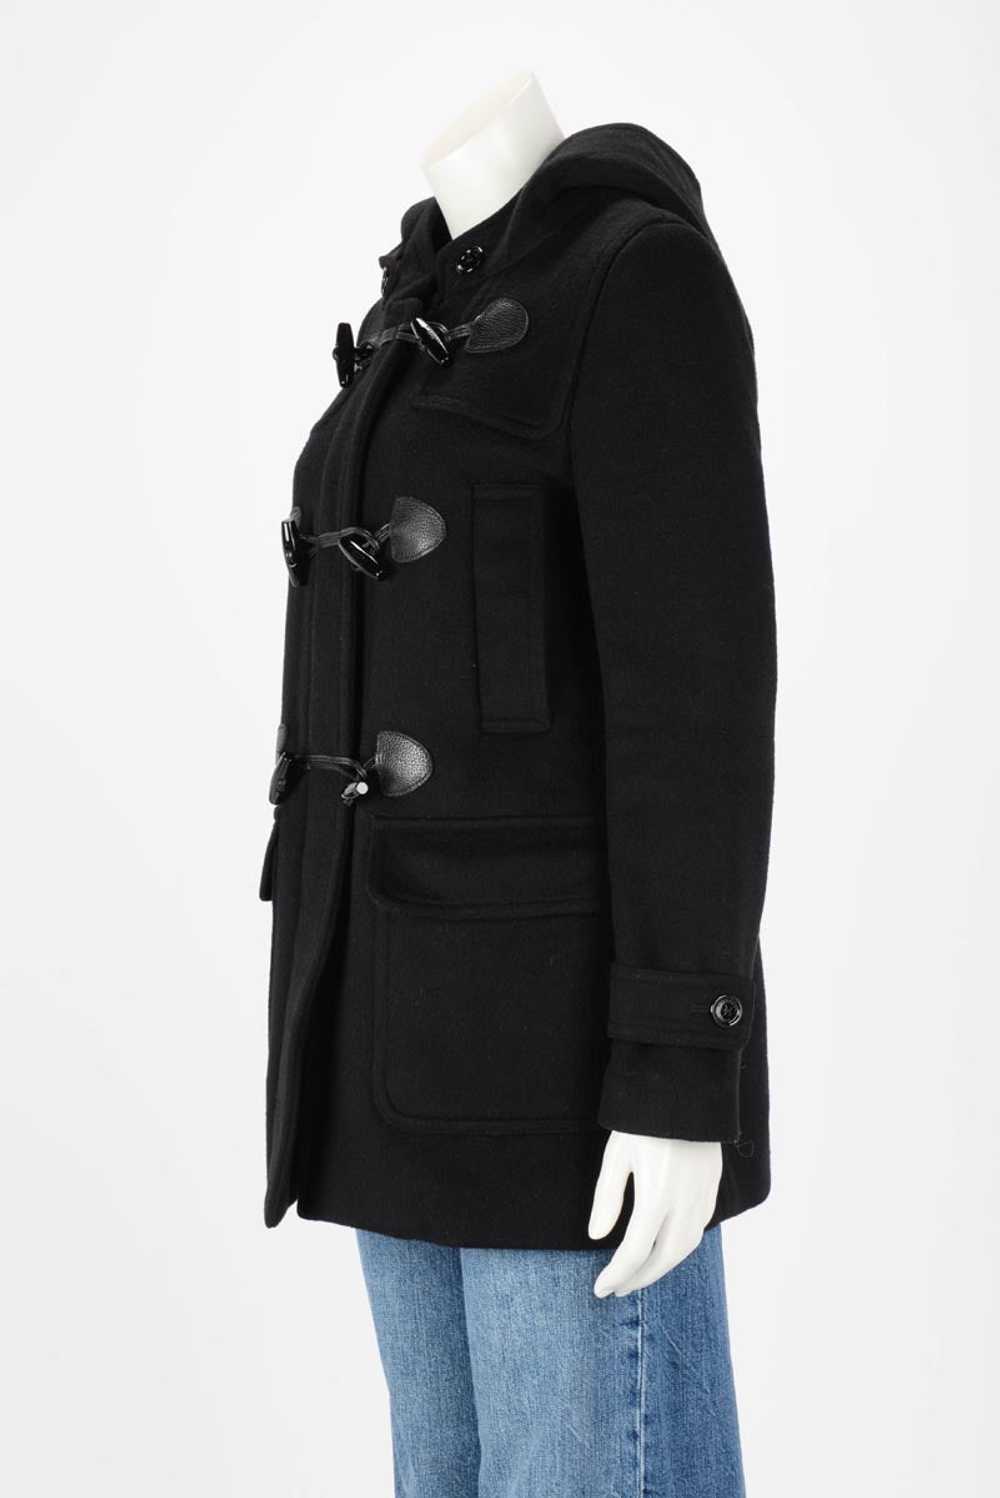 Burberry Brit Black Cashmere Blend Duffle Coat - image 2